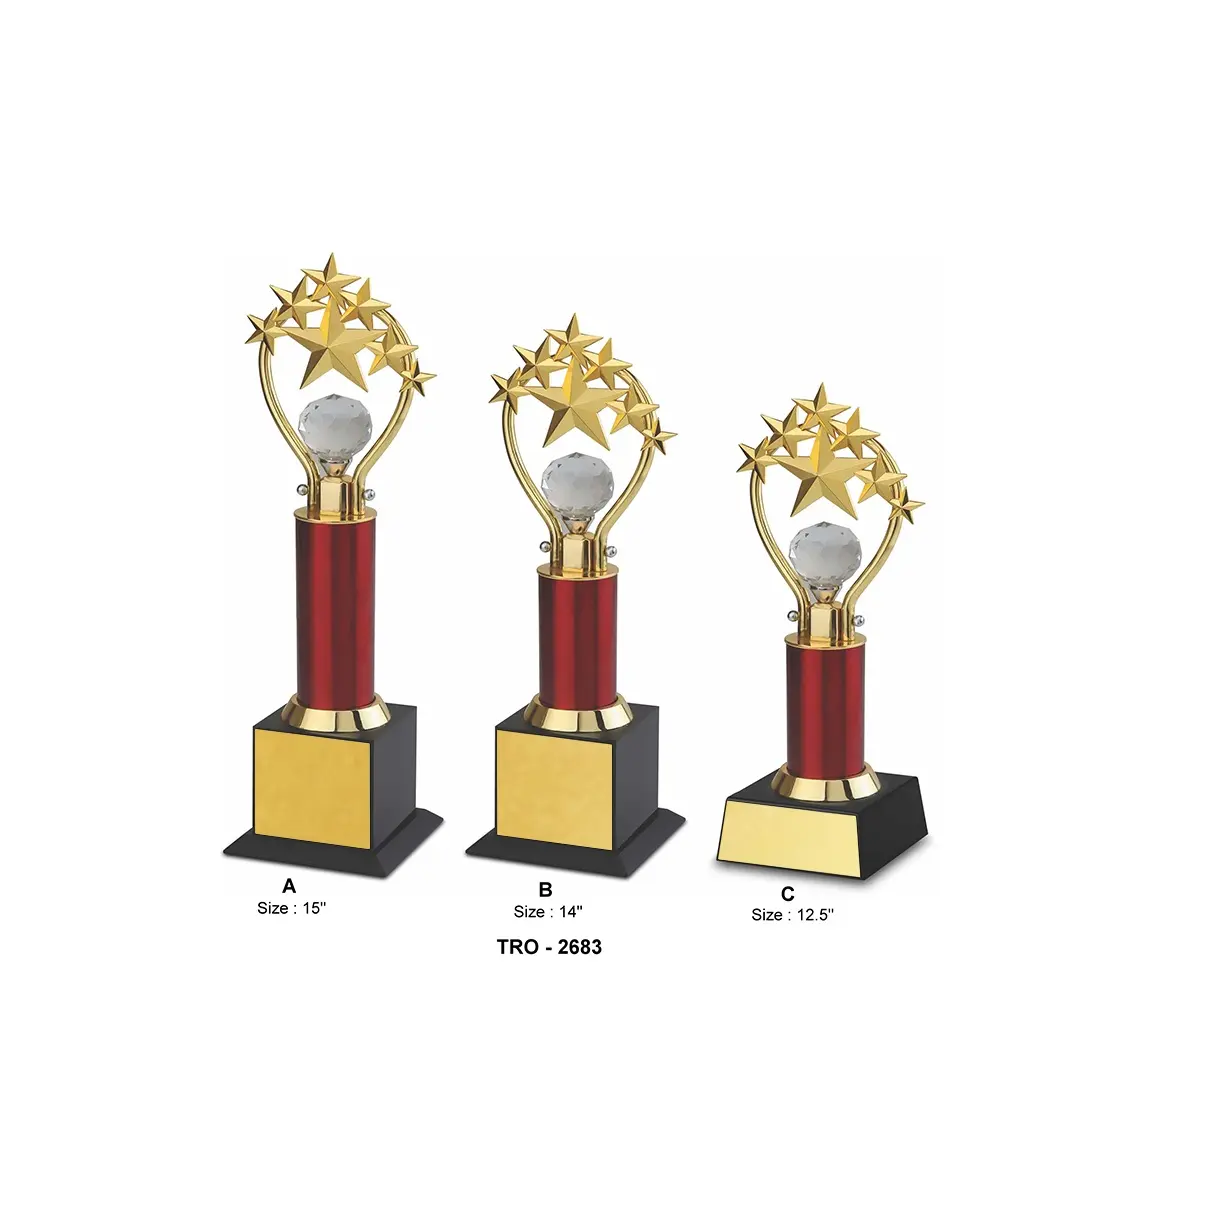 La maggior parte dei regali e dei mestieri più venduti trofeo aziendale a 7 stelle per i premi del servizio Ling usa trofei e placche dal produttore indiano